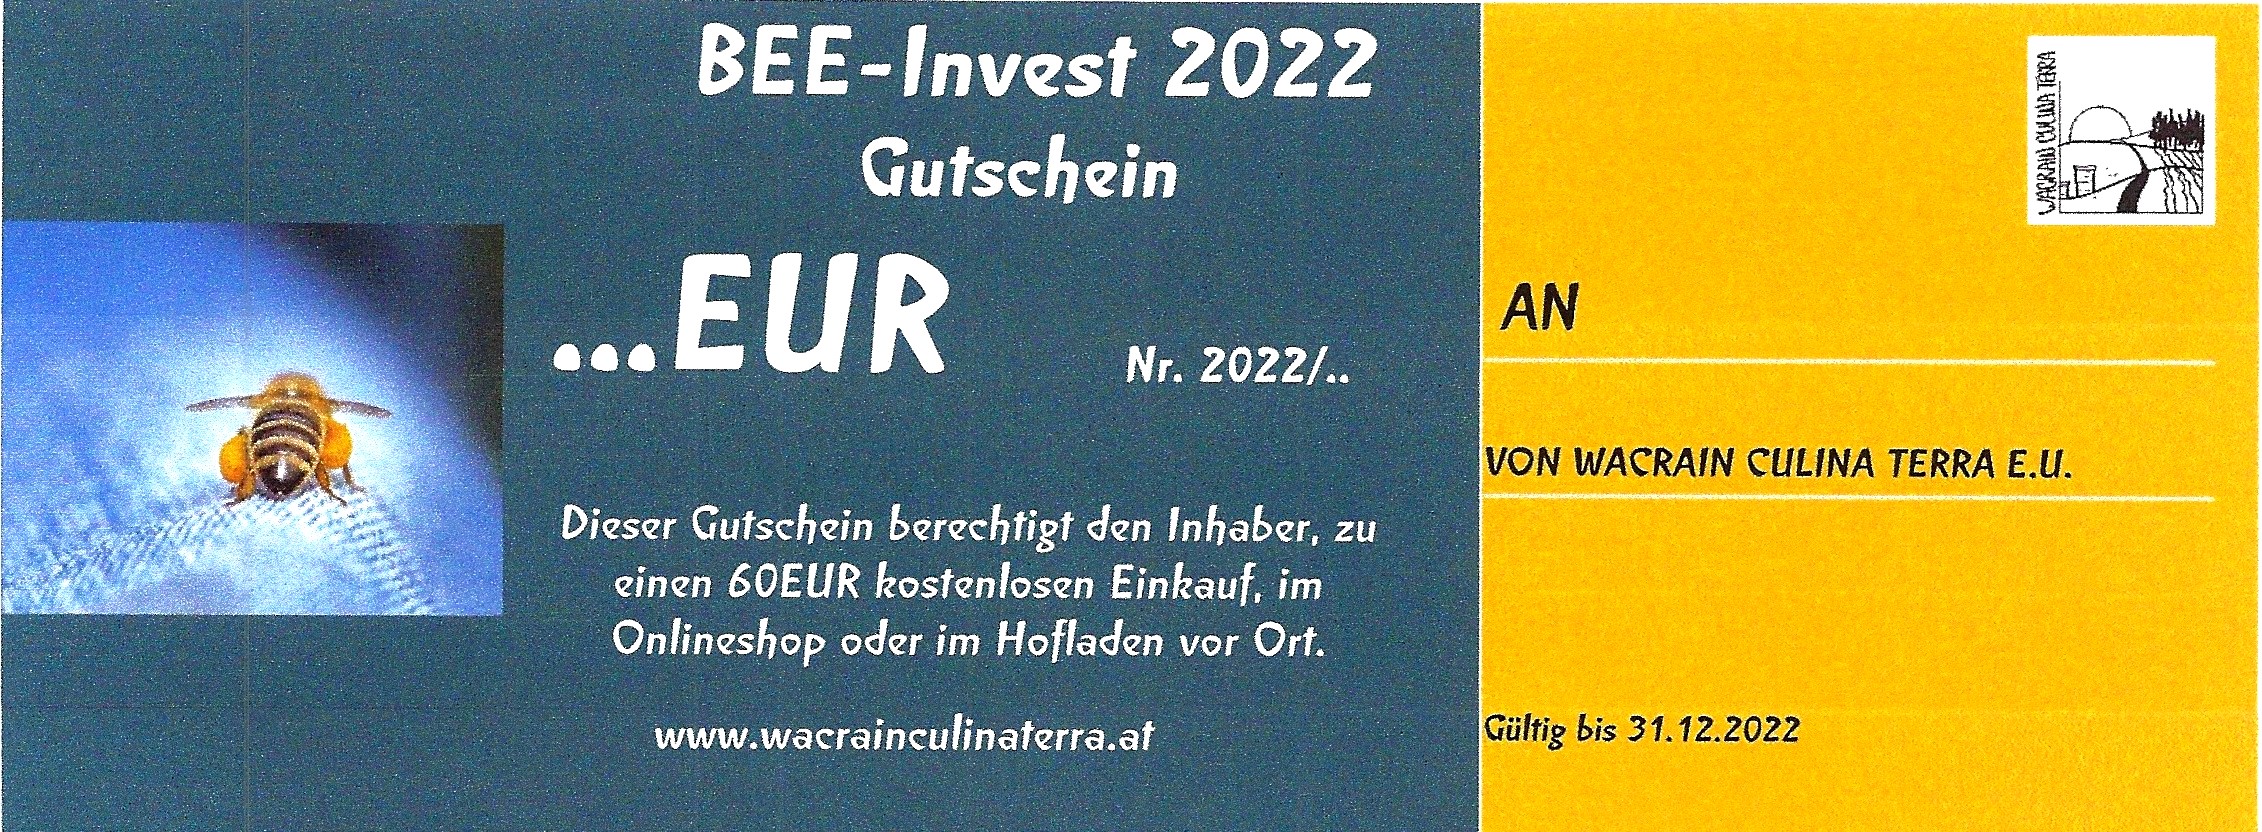 BEE-Invest 2023 Gutschein